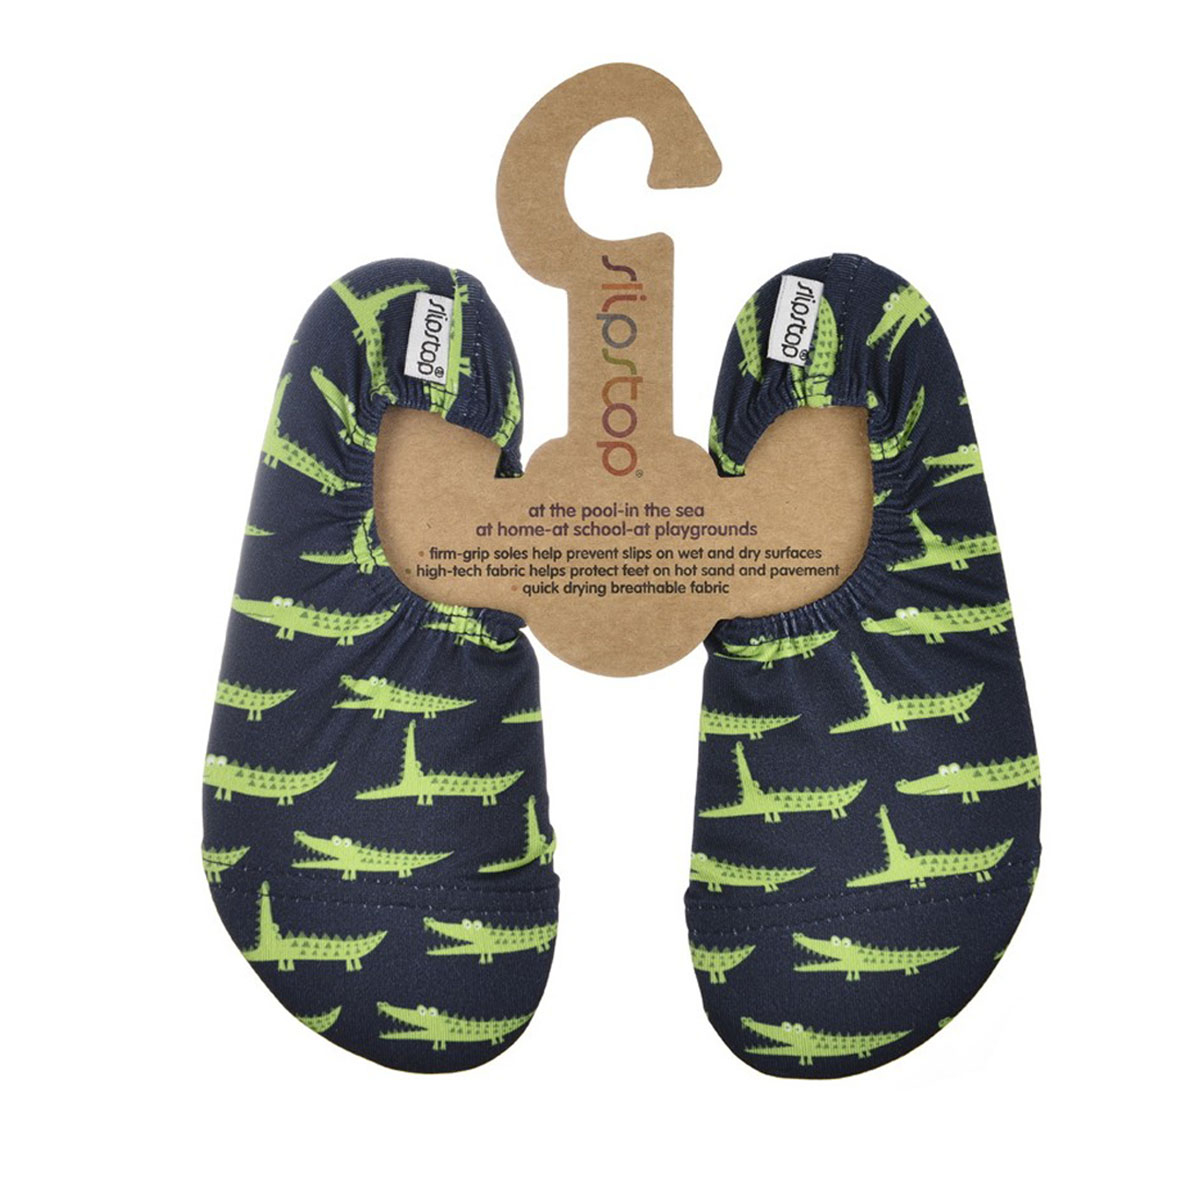 Παιδικά Παπούτσια Θαλάσσης Slipstop Crocodile 33-35 33-35